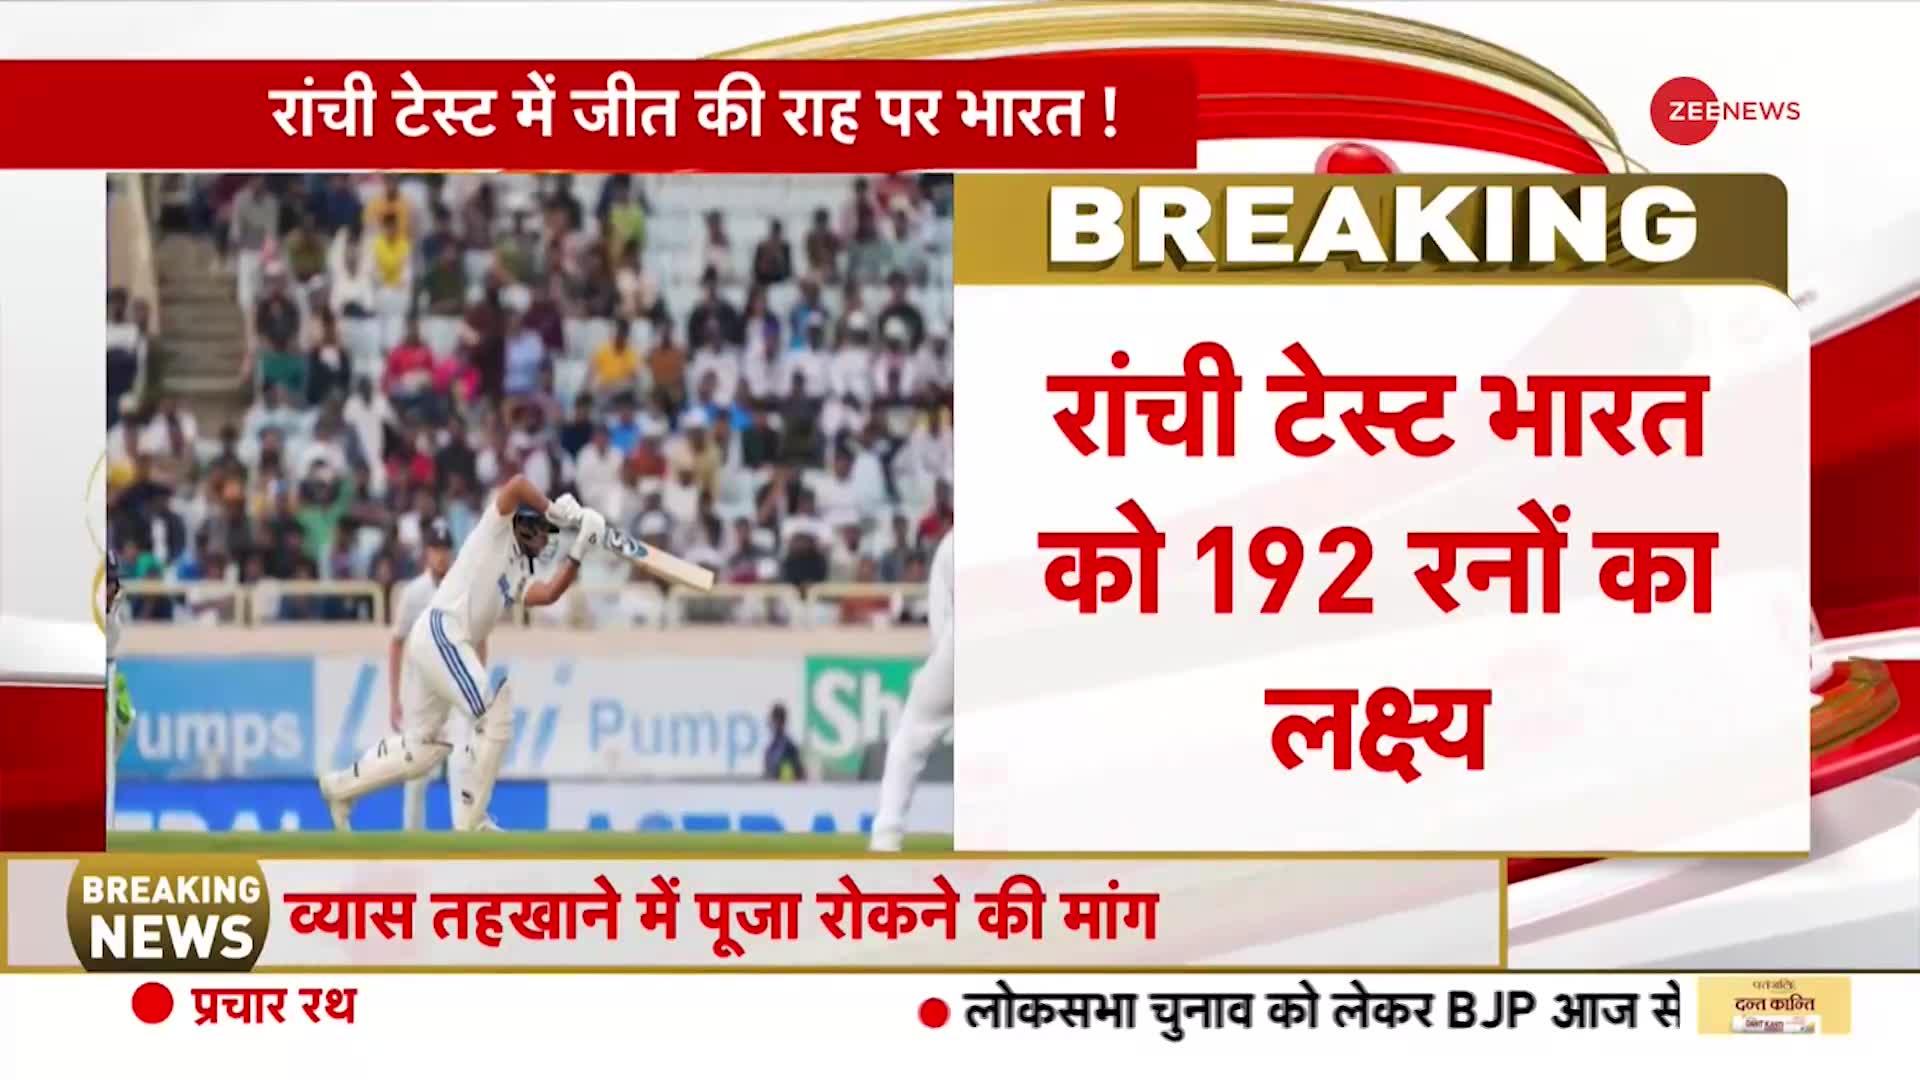 रांची टेस्ट मैच में भारत को 192 रनों का लक्ष्य मिला